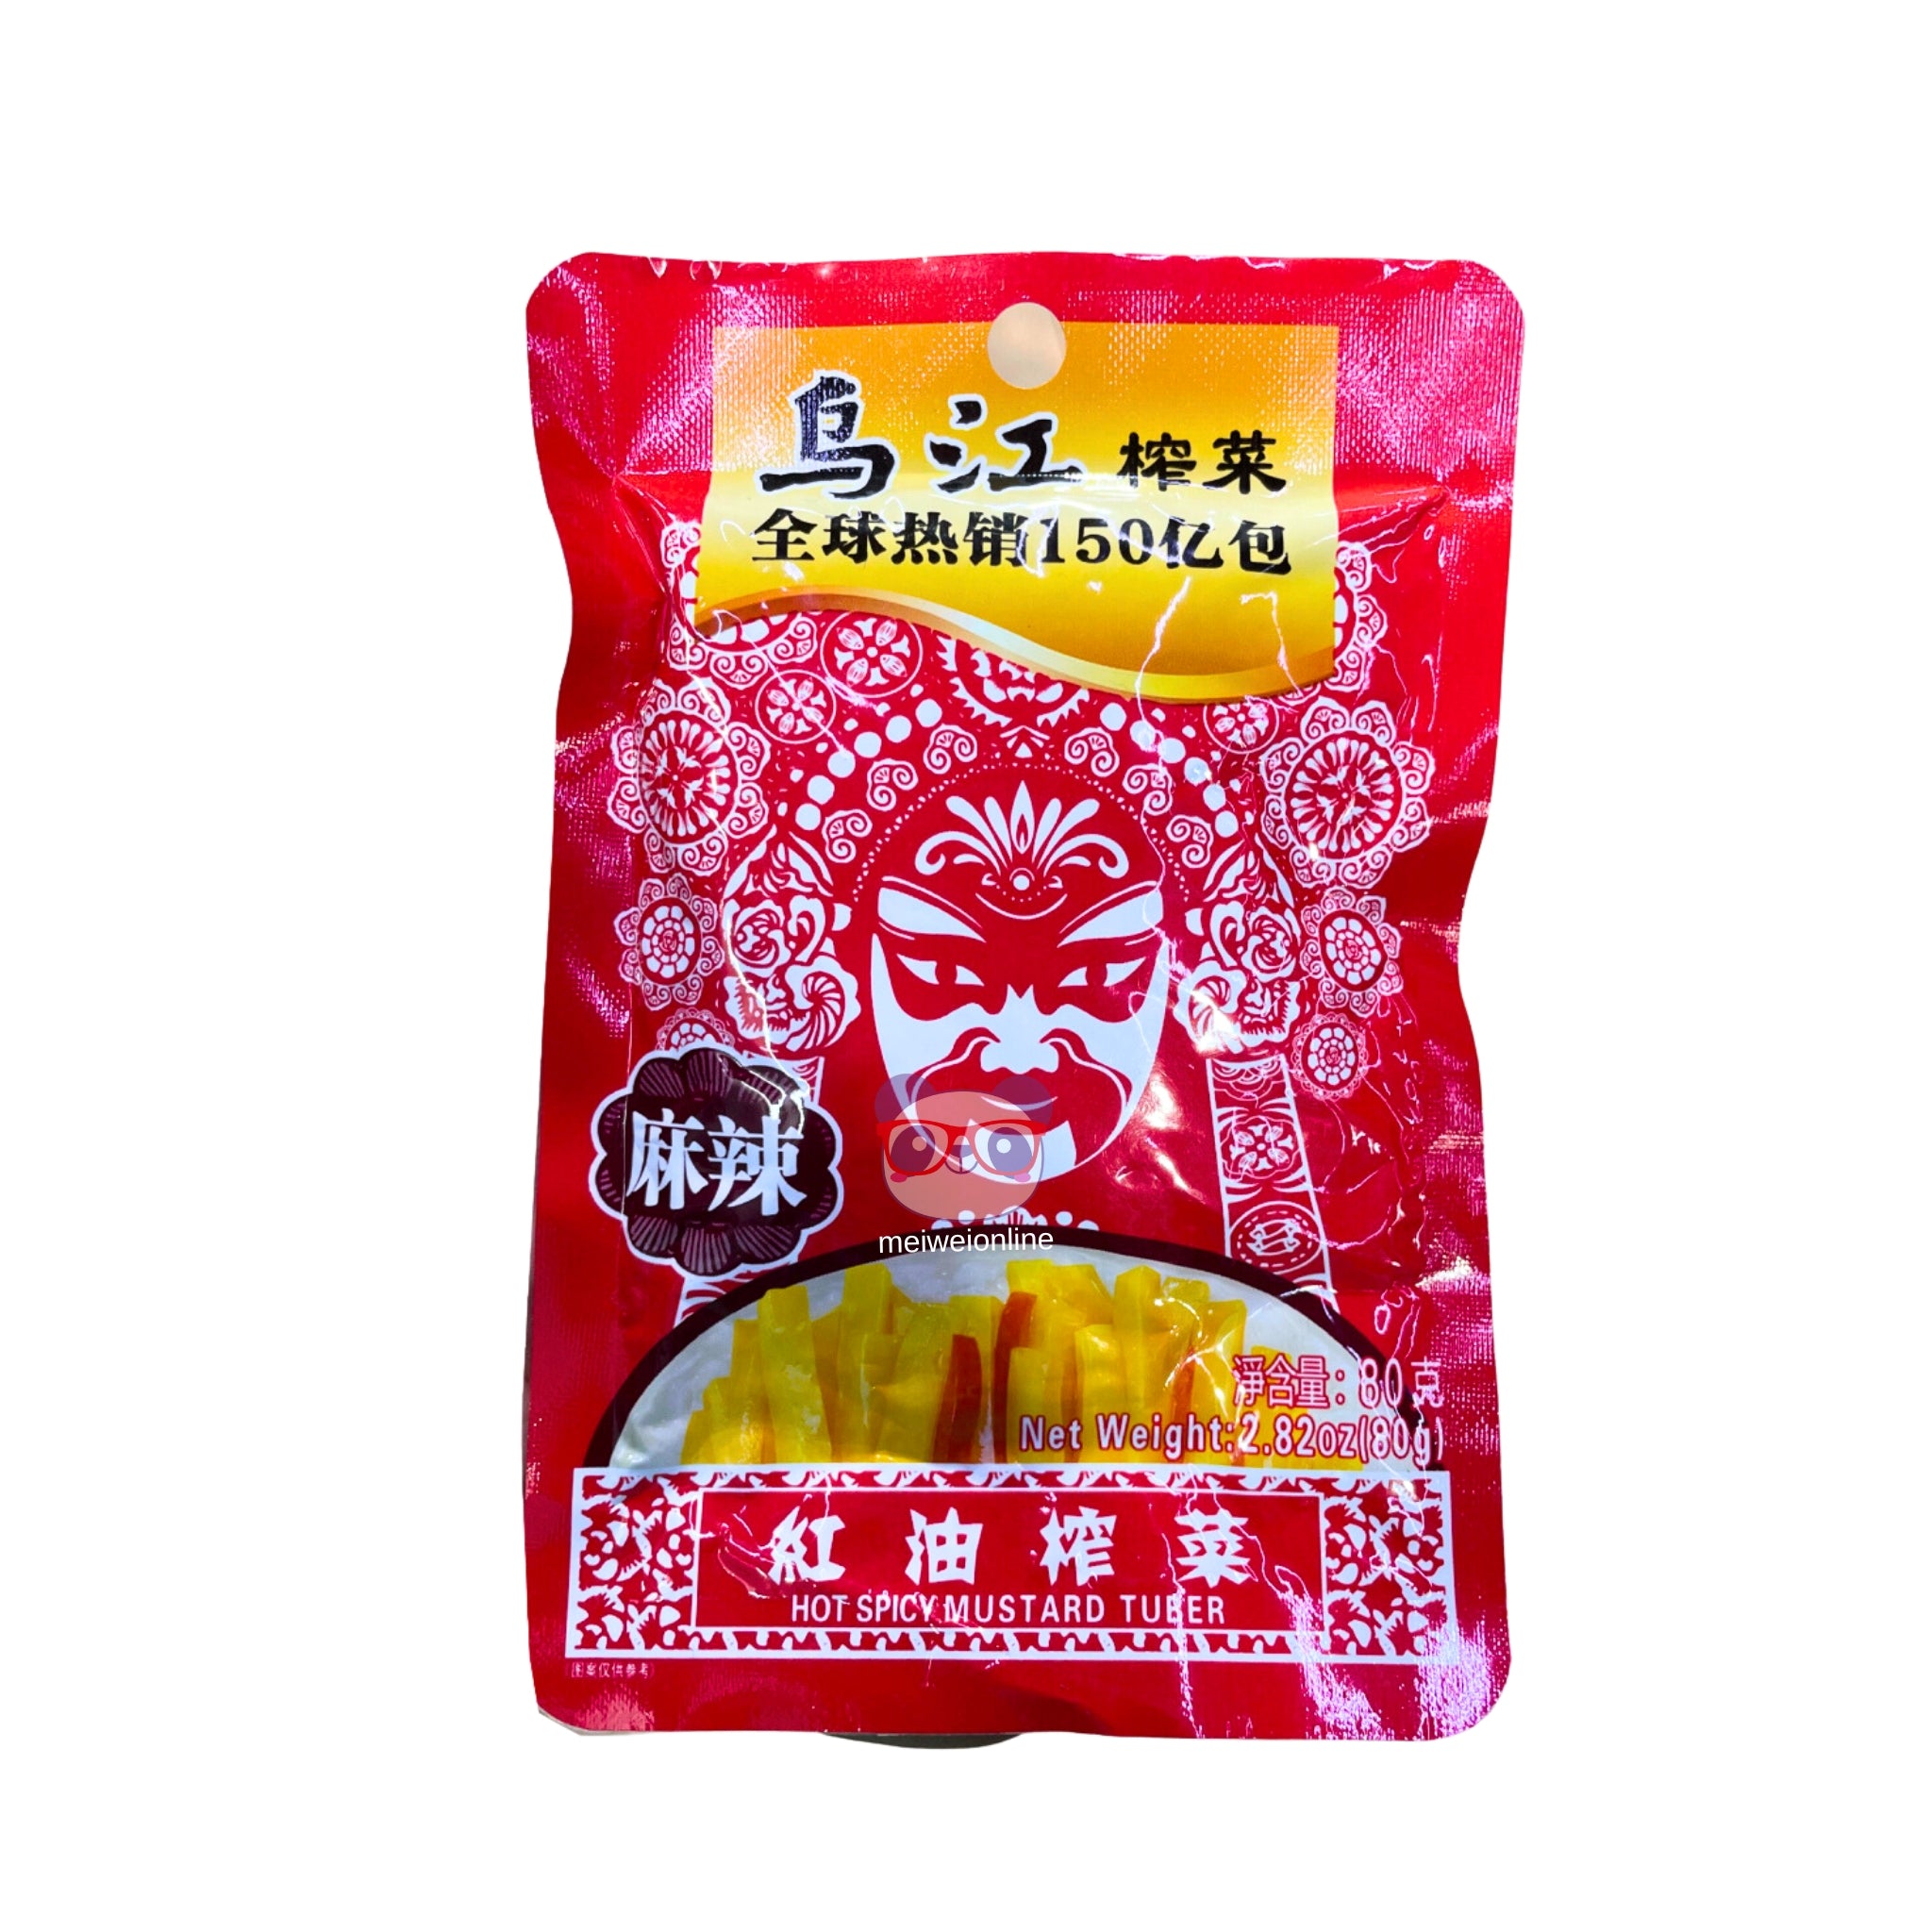 Caule de mostarda em óleo vermelho picante Wujiang 80g